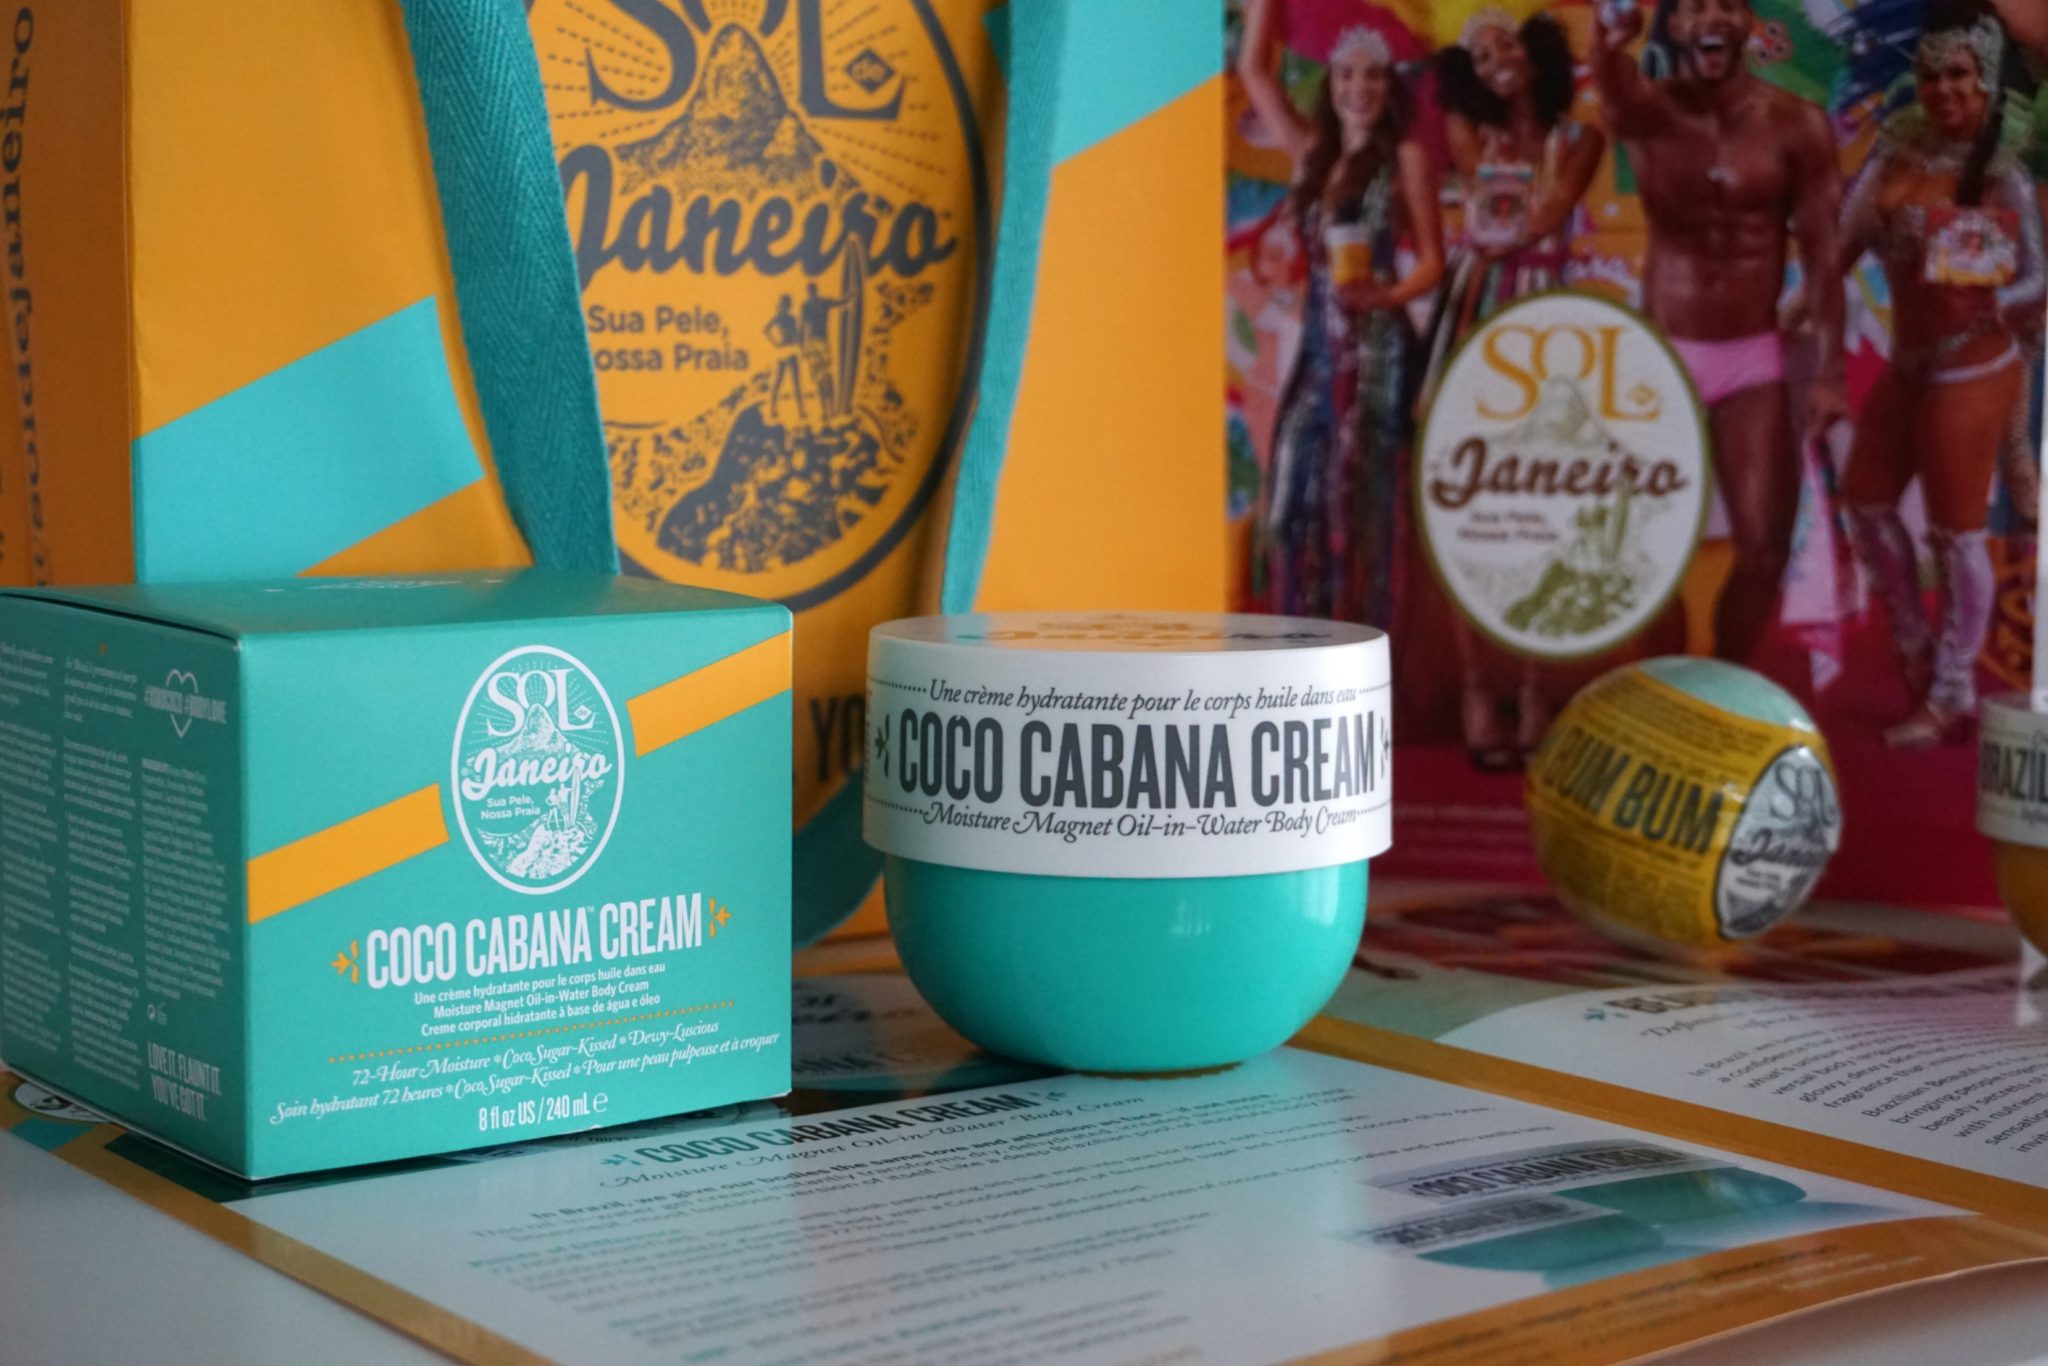 The Sol de Janeiro Coco Cabana Cream Is Here! 